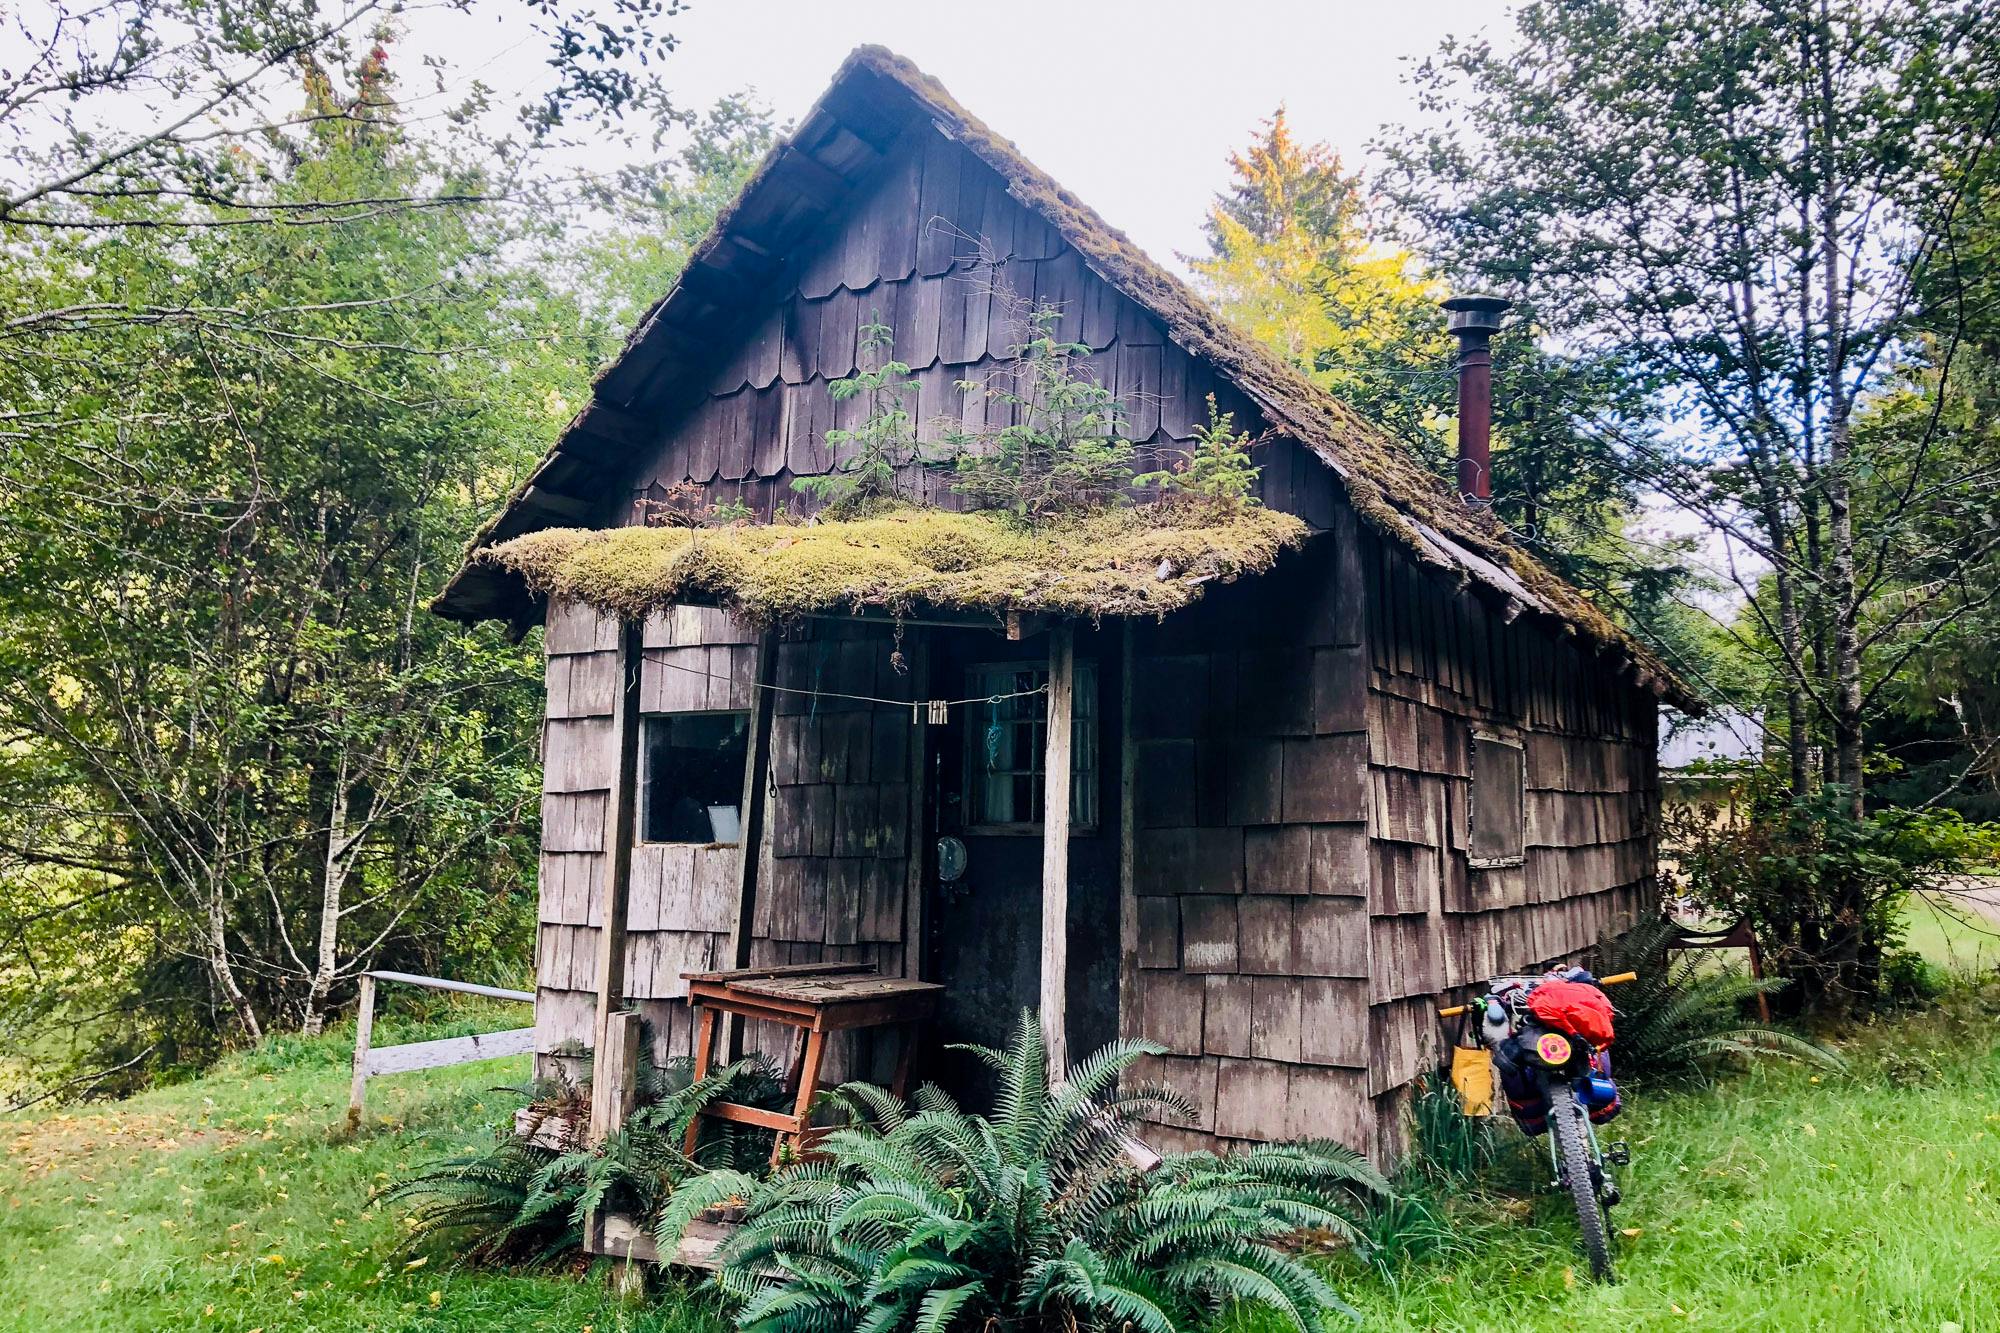 Another Haida Gwaii cabin.